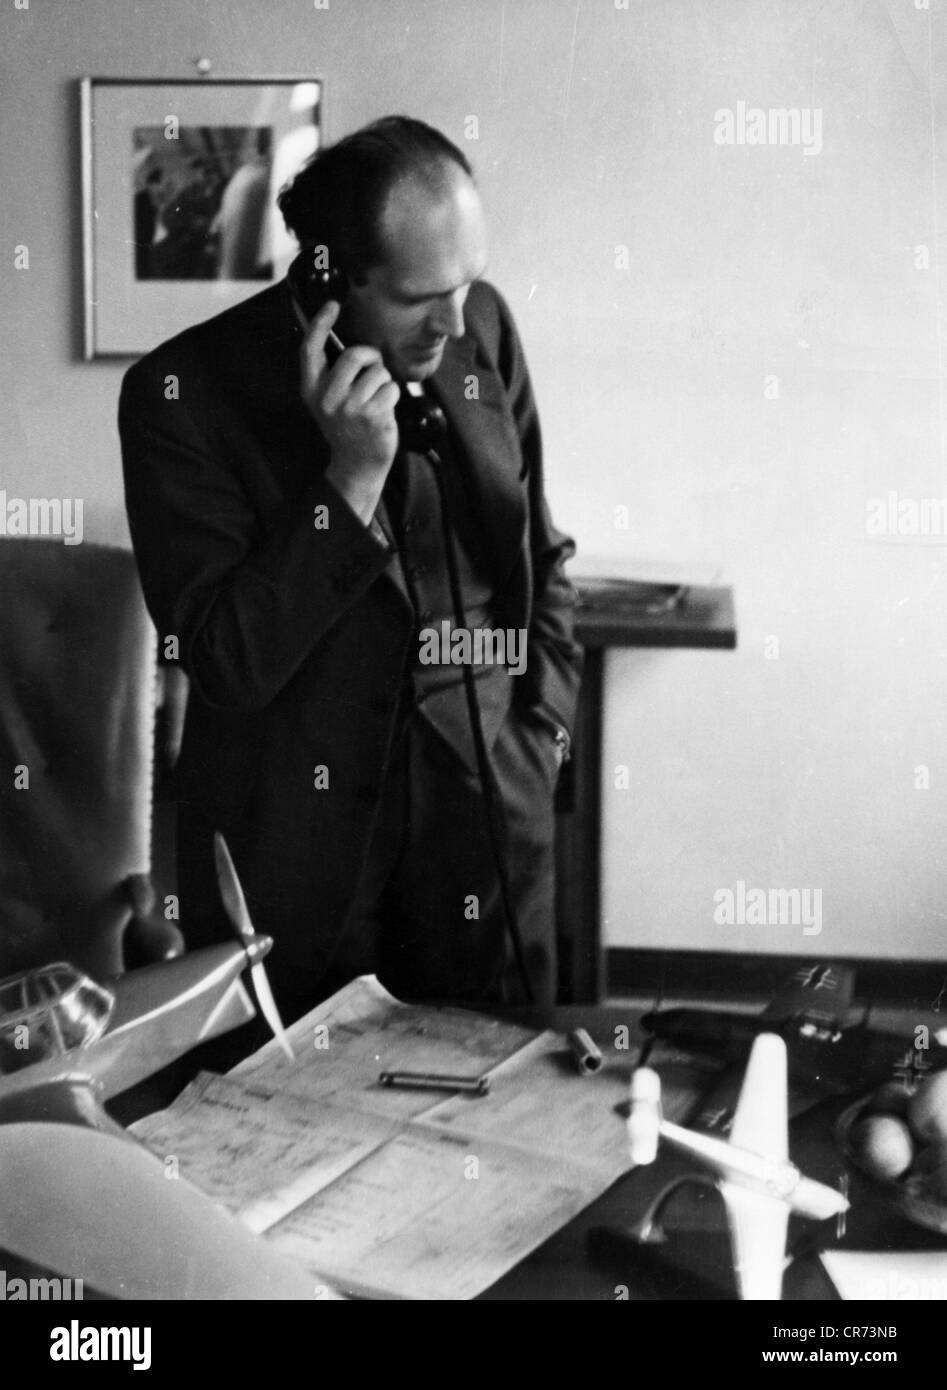 Messerschmitt, Wilhelm Emil-Willys, 26.6.1898 - 16.9.1978, deutscher Flugzeugkonstrukteur, in seinem Büro Messerschmitt Works, Augsburg, Ende der 1930er Jahre, Stockfoto